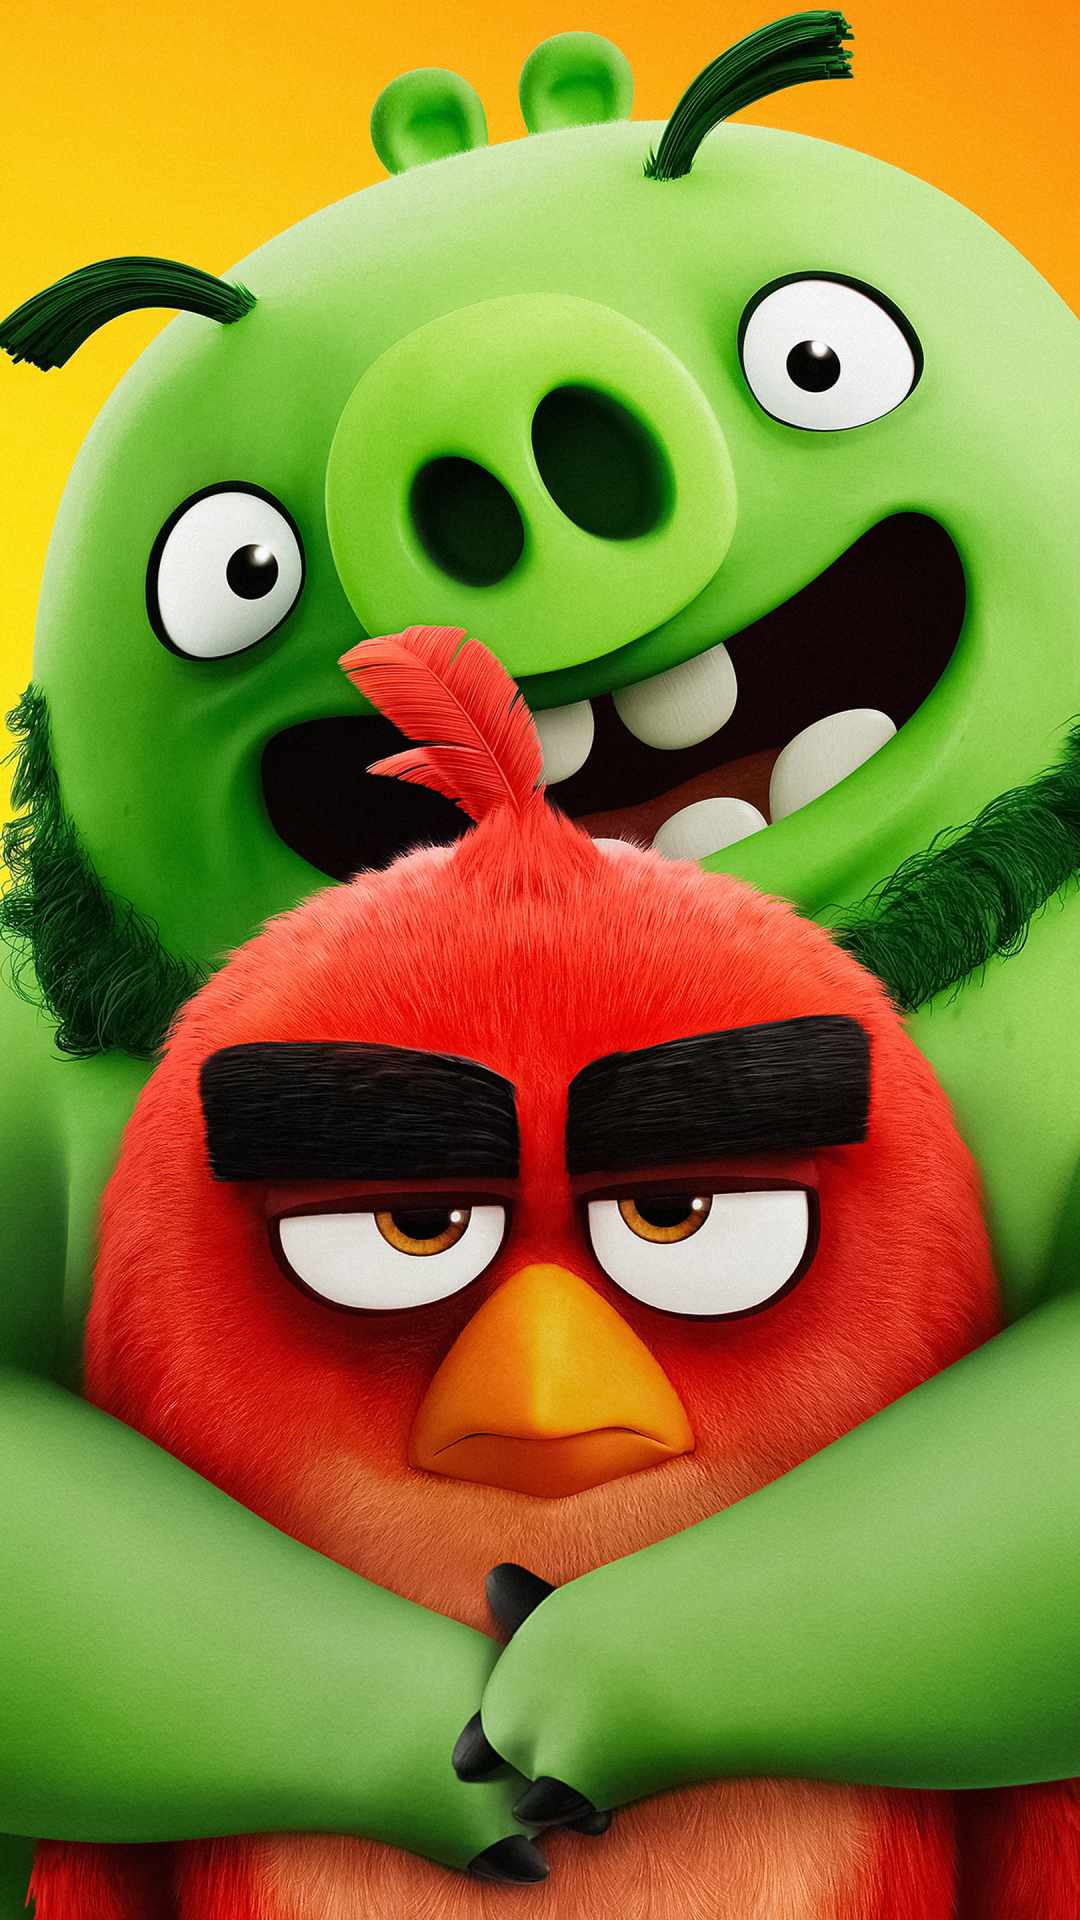 The Angry Birds Movie 2  Free Stock Photos